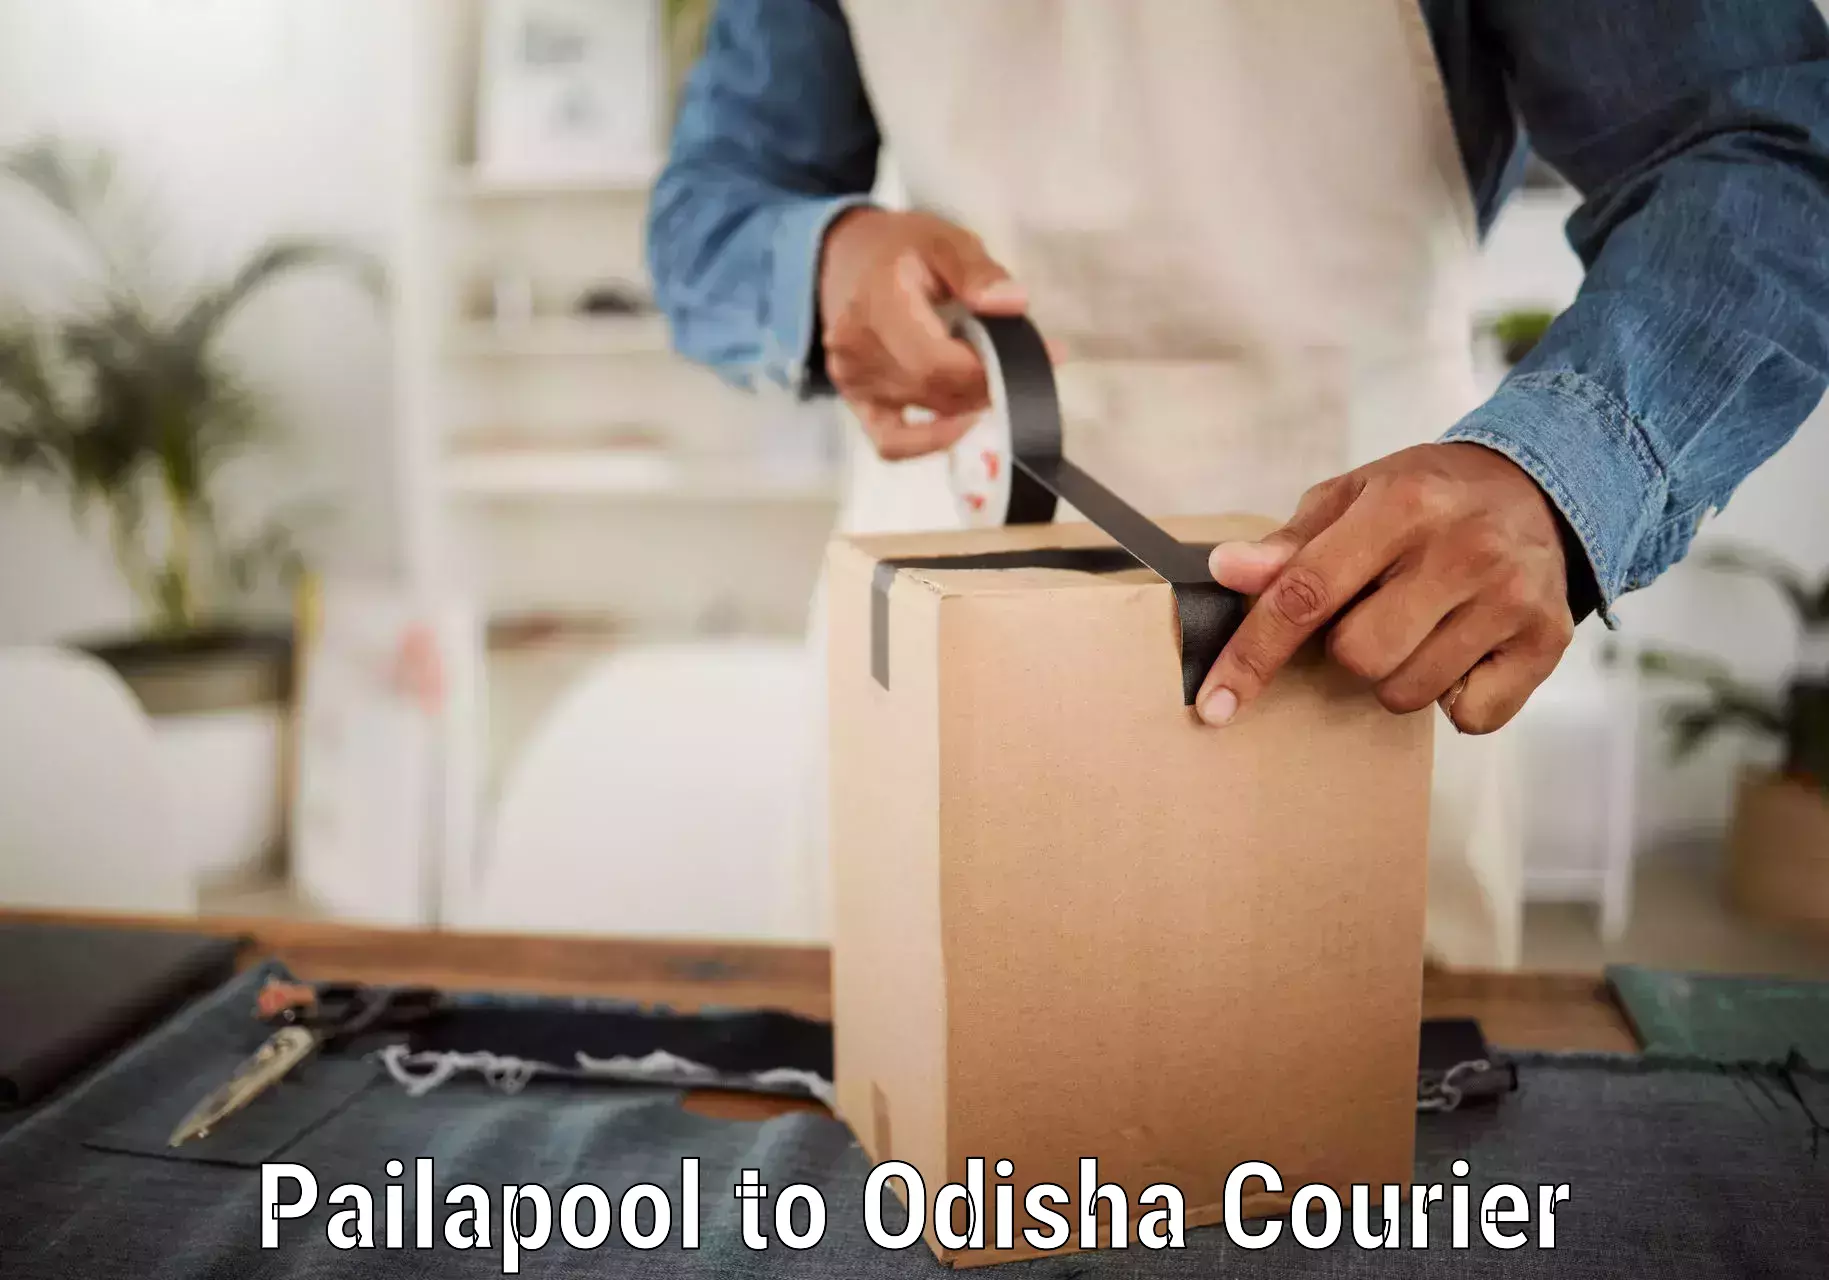 Premium delivery services Pailapool to Kesinga